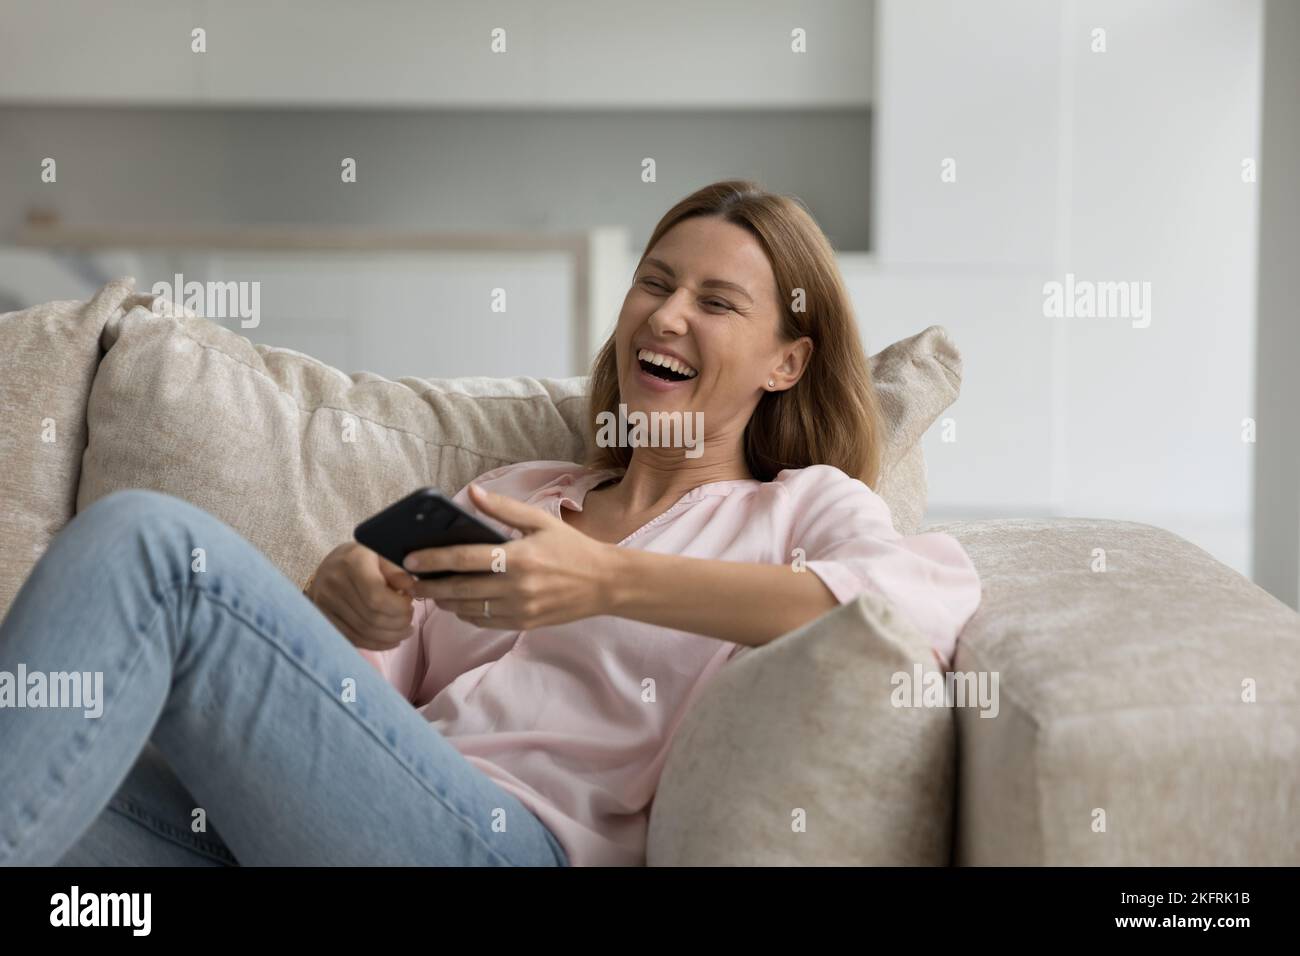 Alegre mujer que se ríe sentada en el sofá con su smartphone Foto de stock